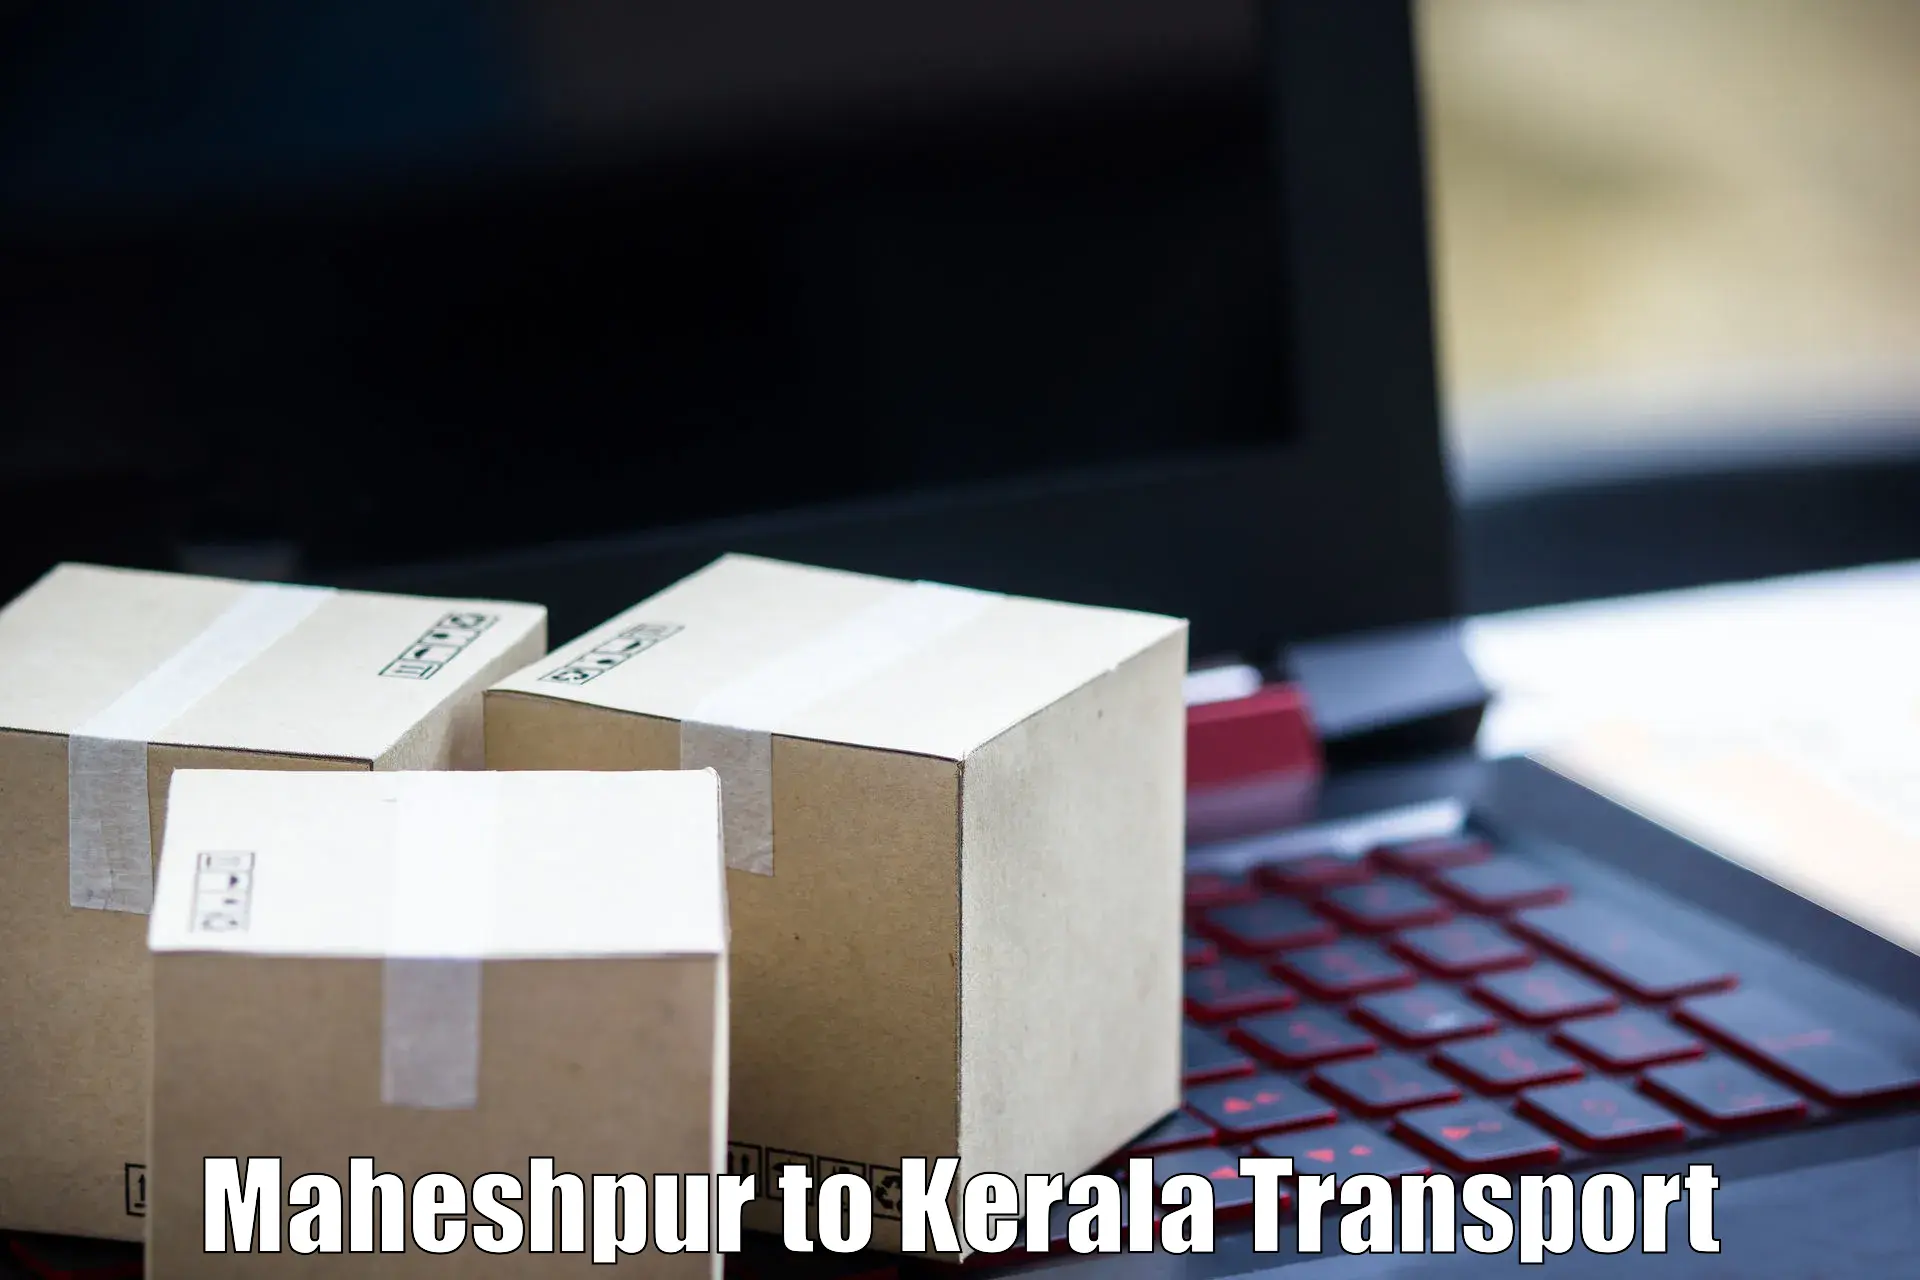 Nearby transport service Maheshpur to Kuthuparamba